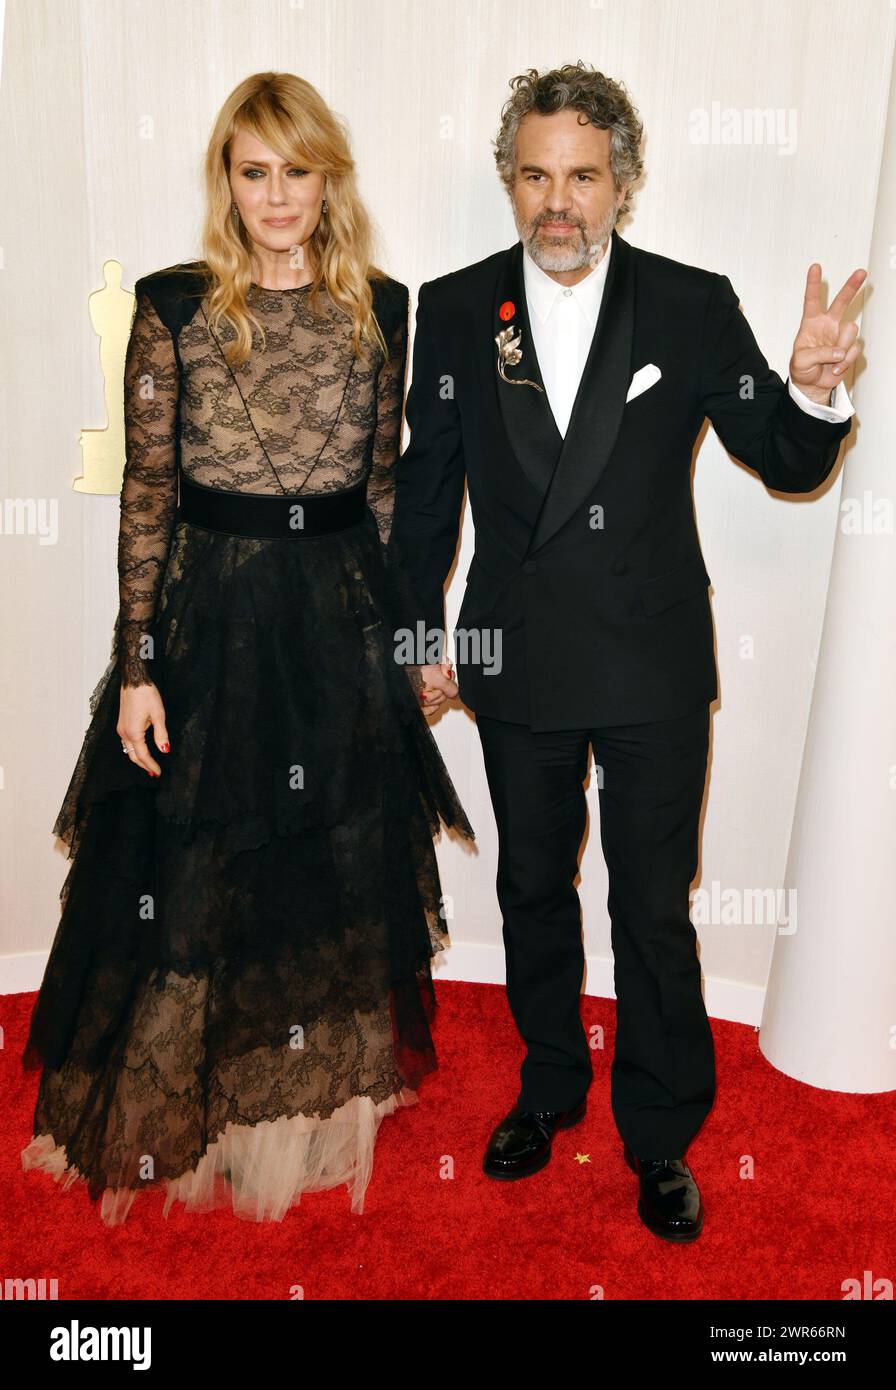 Los Angeles, Californie 10 mars 2024. Mark Ruffalo et Sunrise Coigney aux 96e Oscars annuels à l'Ovation Hollywood le 10 mars 2024 à Los Angeles, Californie. Crédit : Koi Sojer/Media Punch/Alamy Live News Banque D'Images